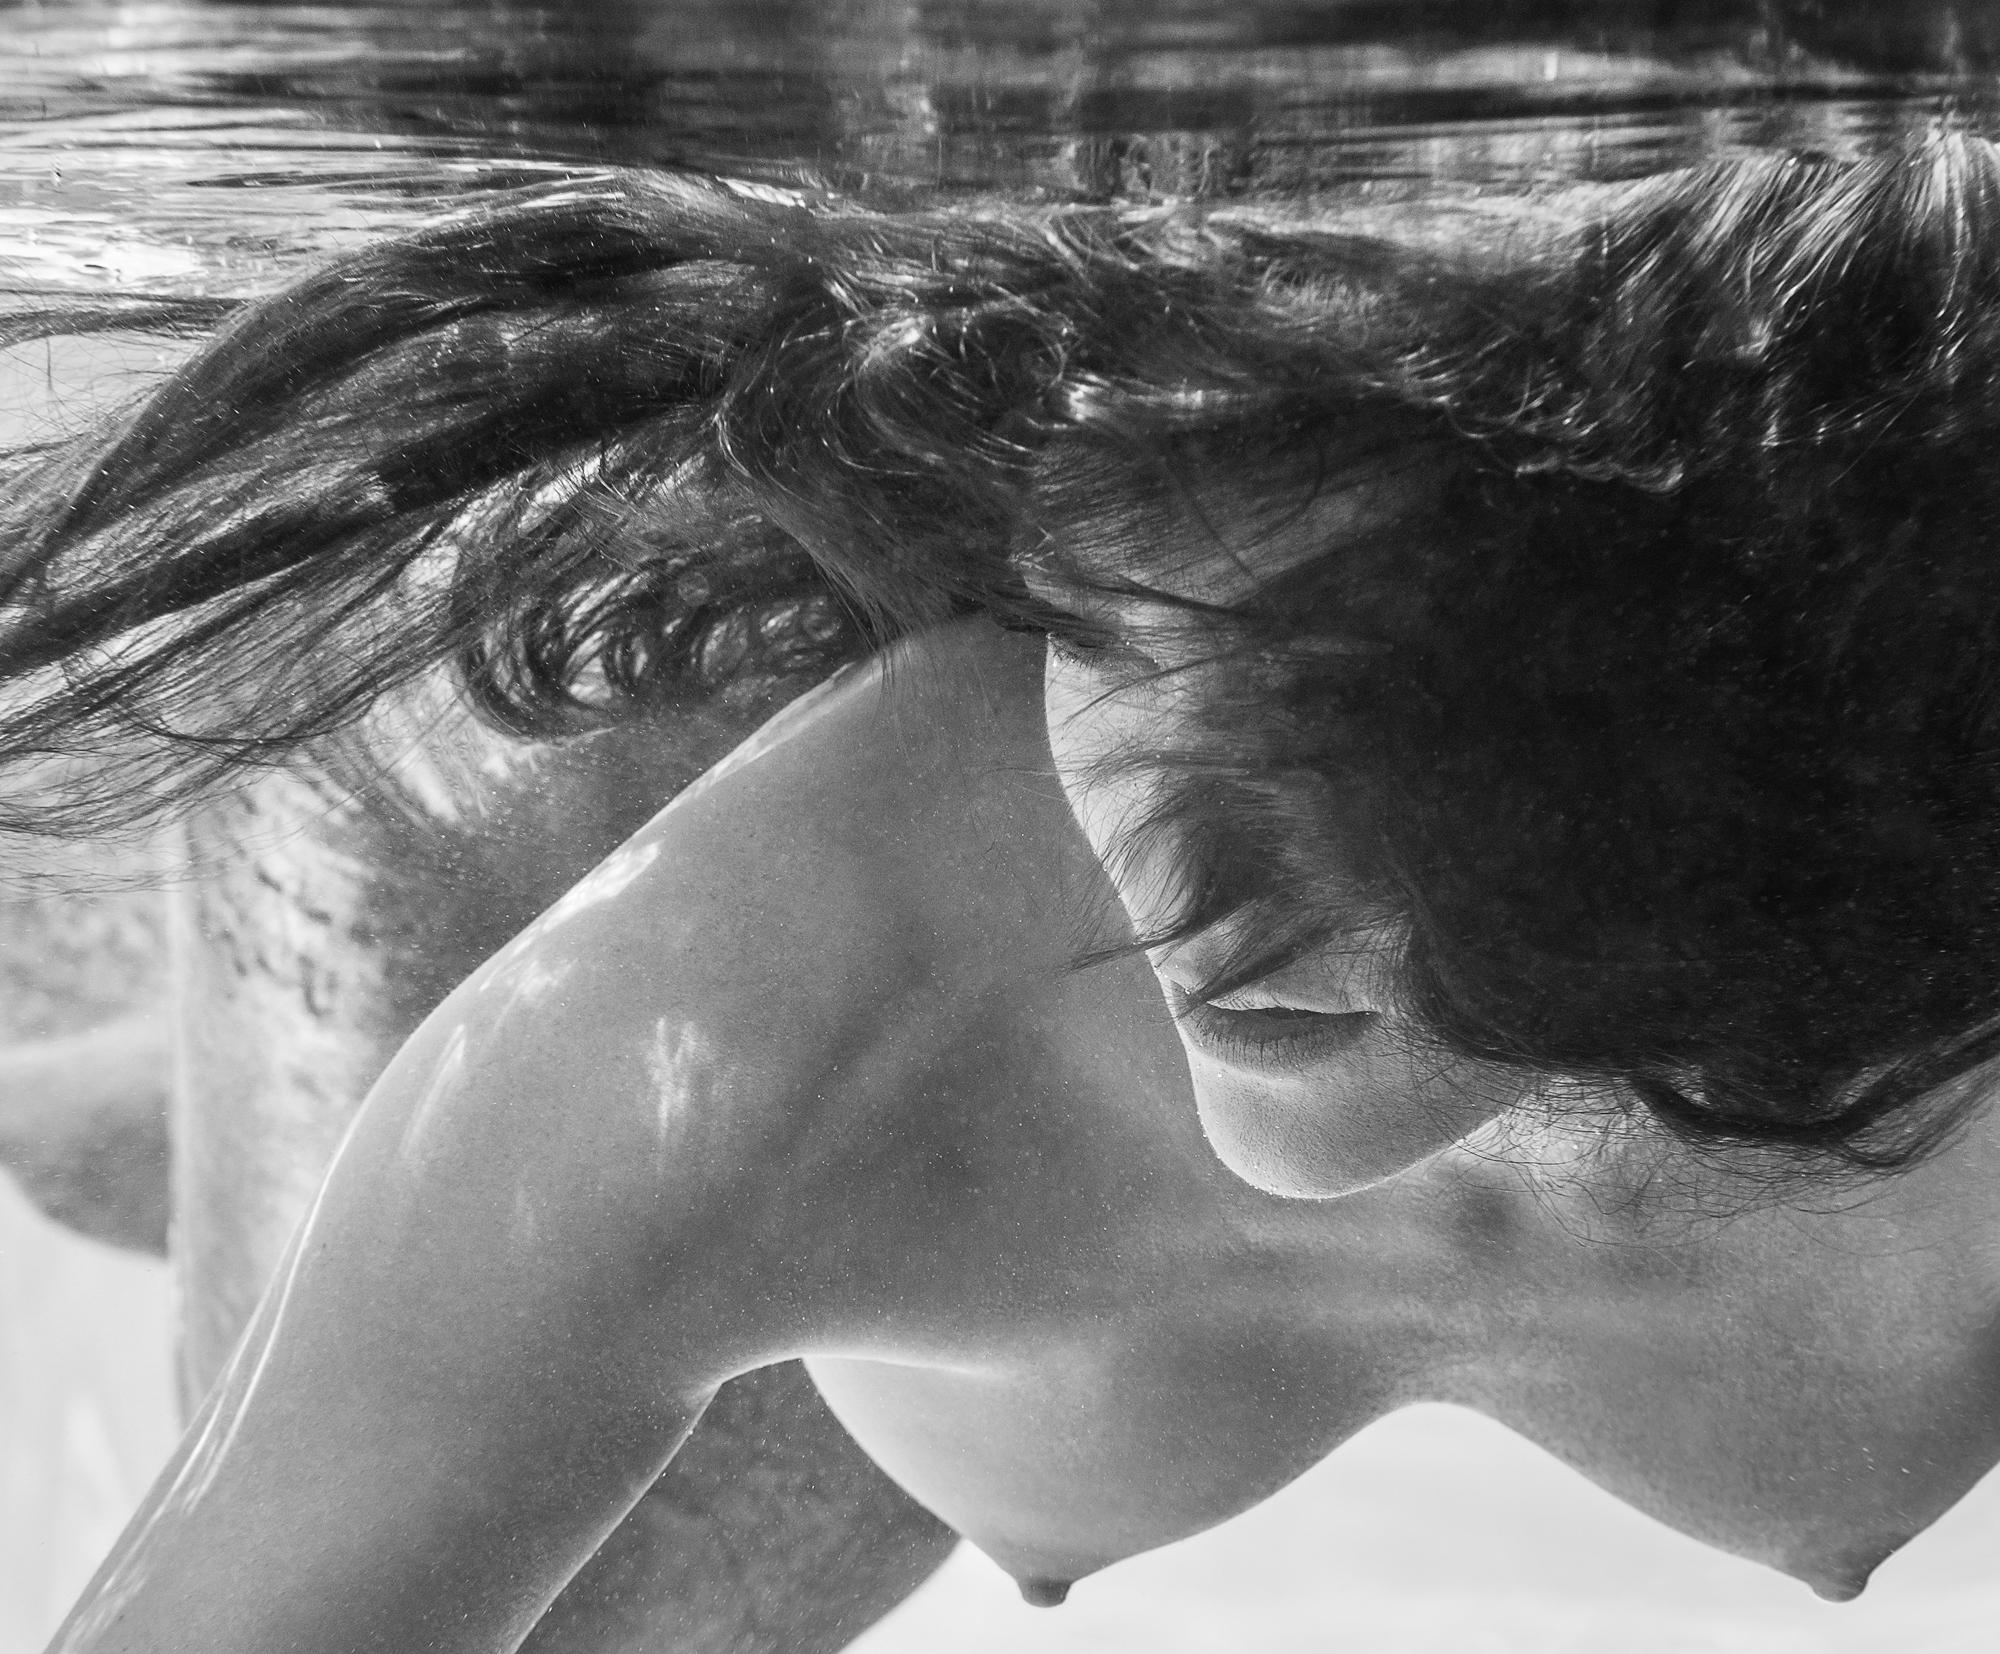 Apriel - photographie de nu sous-marine en noir et blanc - imprimé sur aluminium 38" x 46"